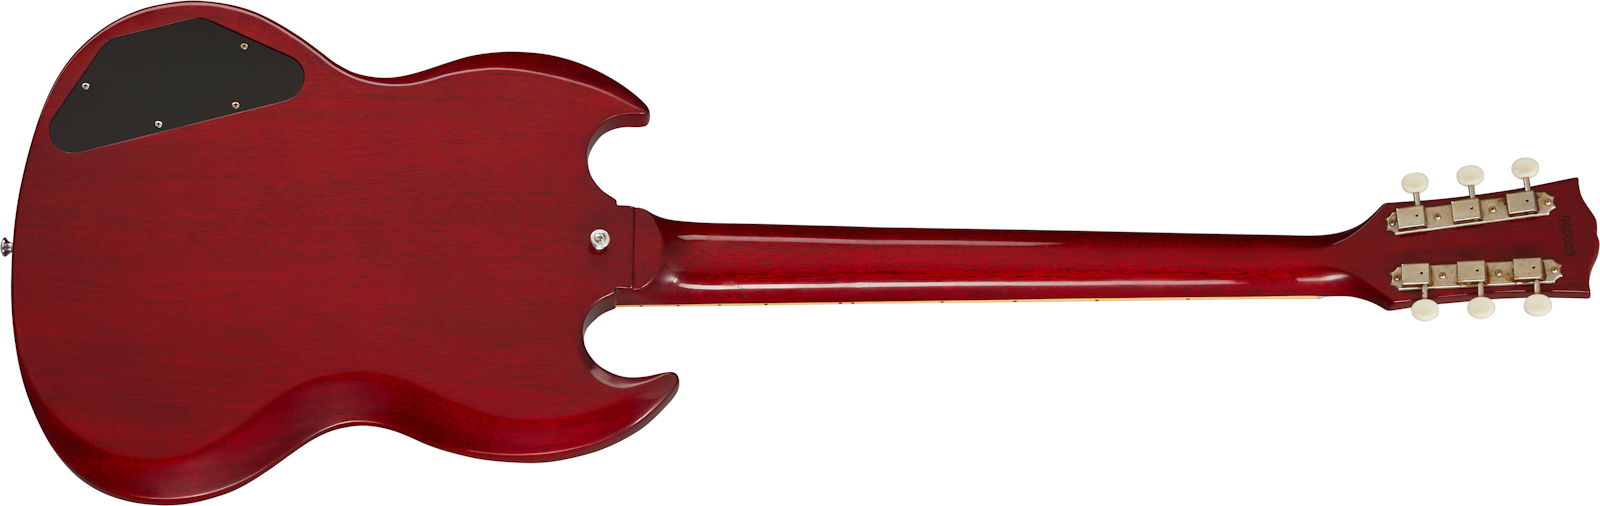 Gibson Custom Shop Sg Special 1963 Reissue 2p90 Ht Rw - Vos Cherry Red - Guitarra eléctrica de doble corte - Variation 1